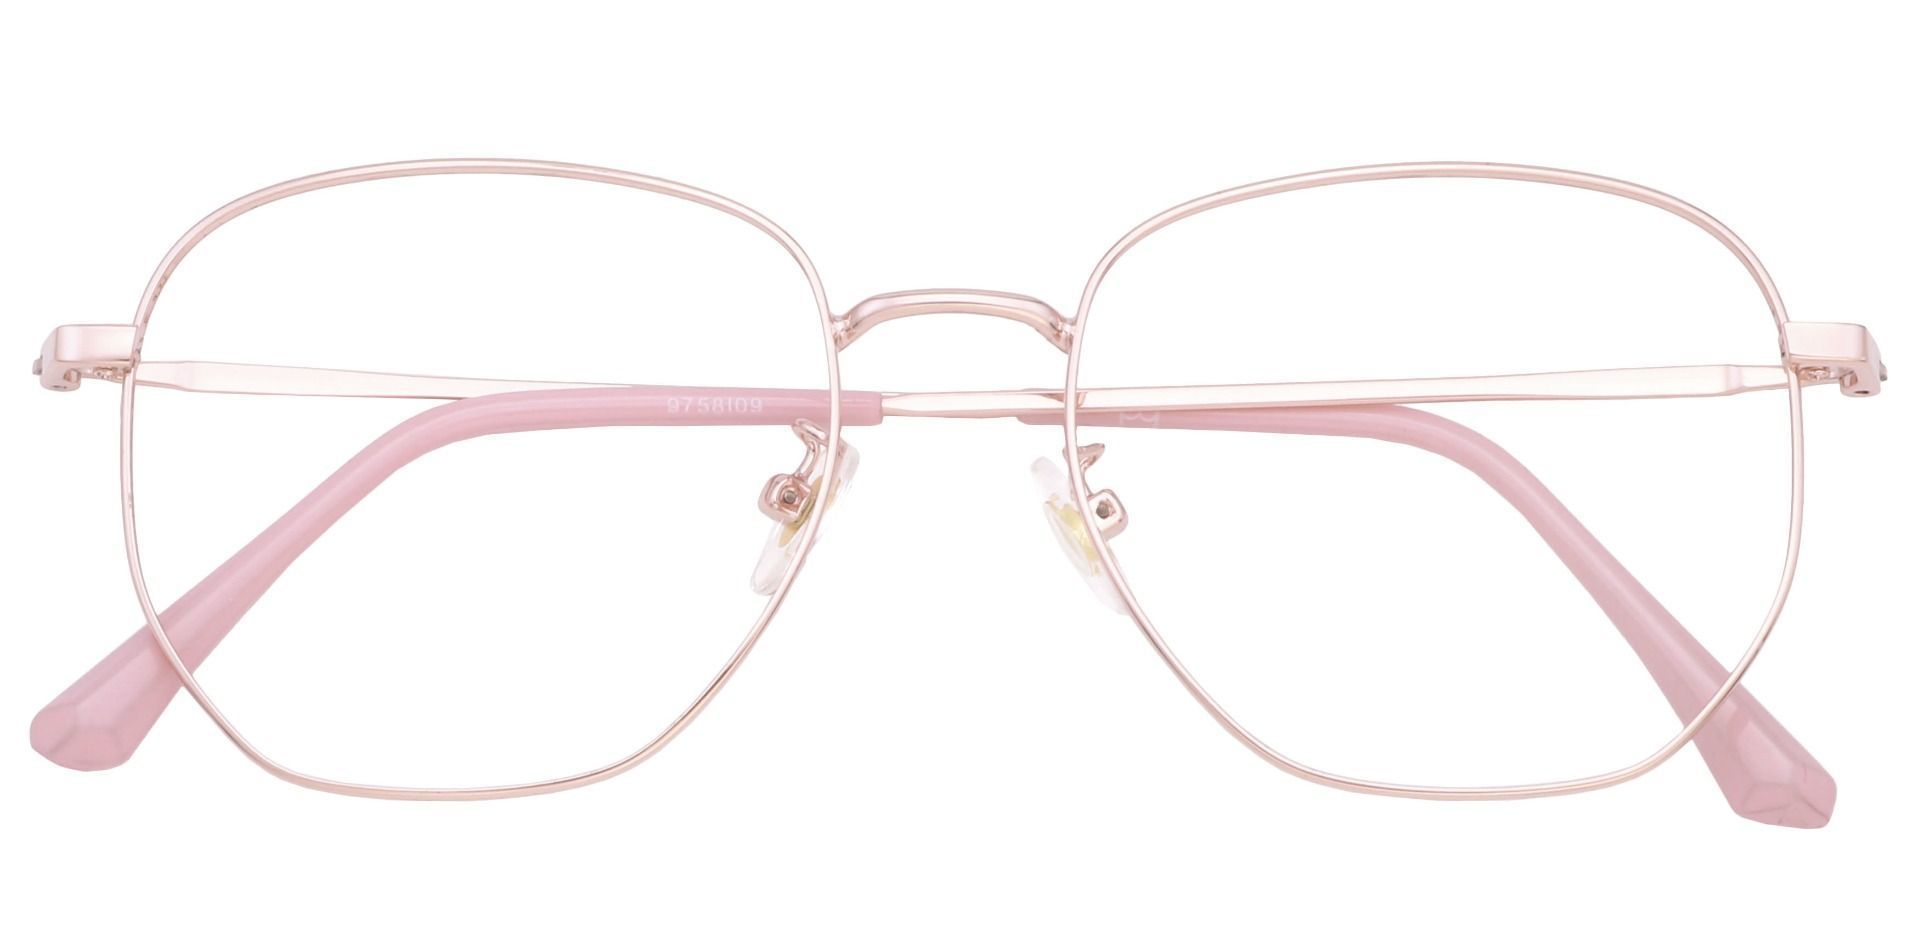 Studio Geometric Progressive Glasses - Pink